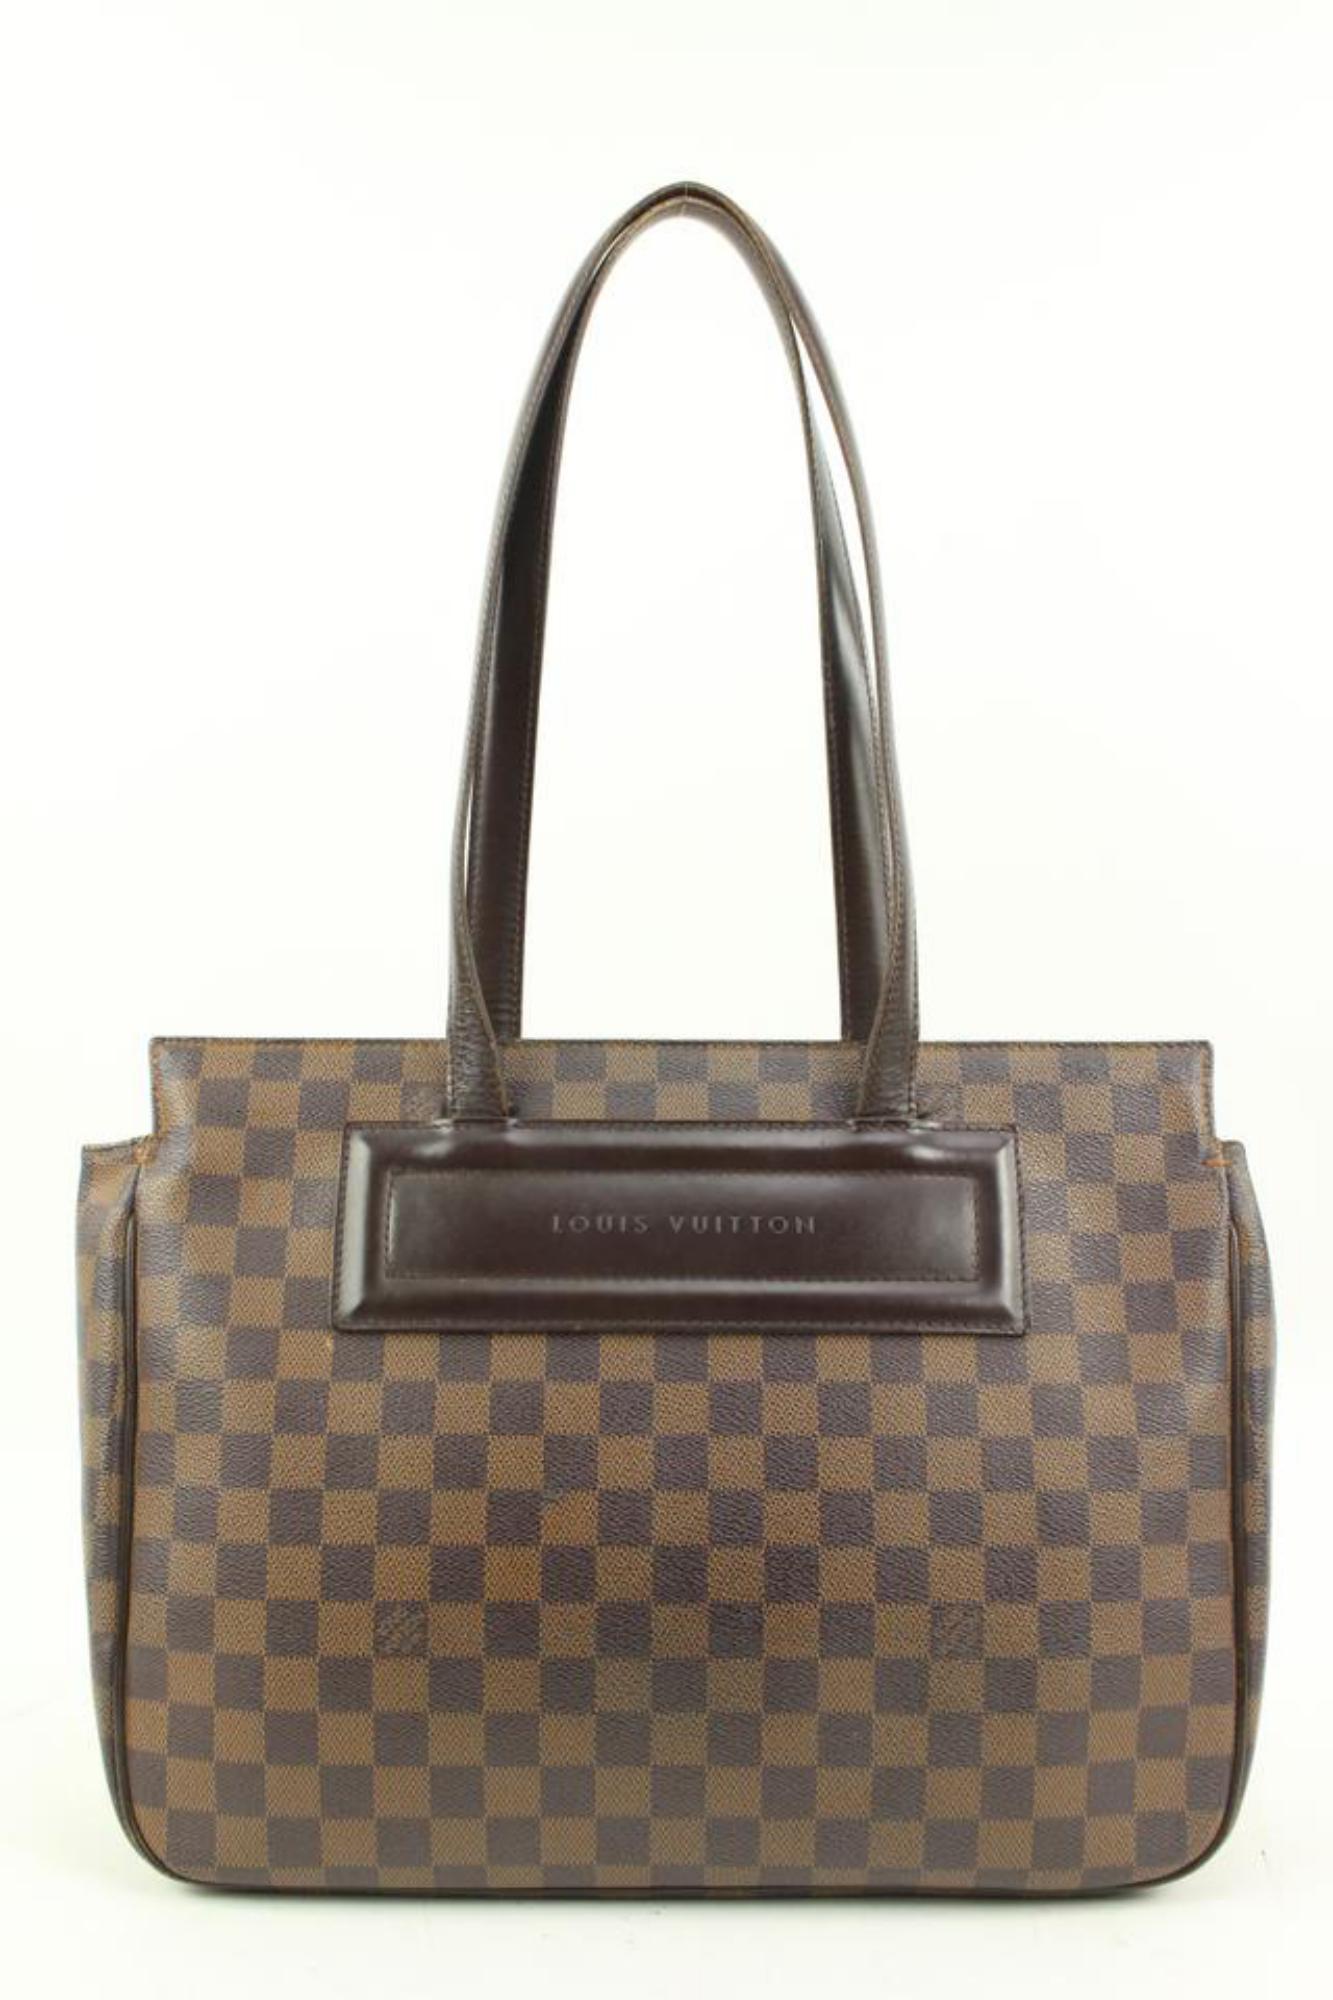 Louis Vuitton Damier Ebene Parioli PM Shopper Tote Bag S215lv94 For Sale 4